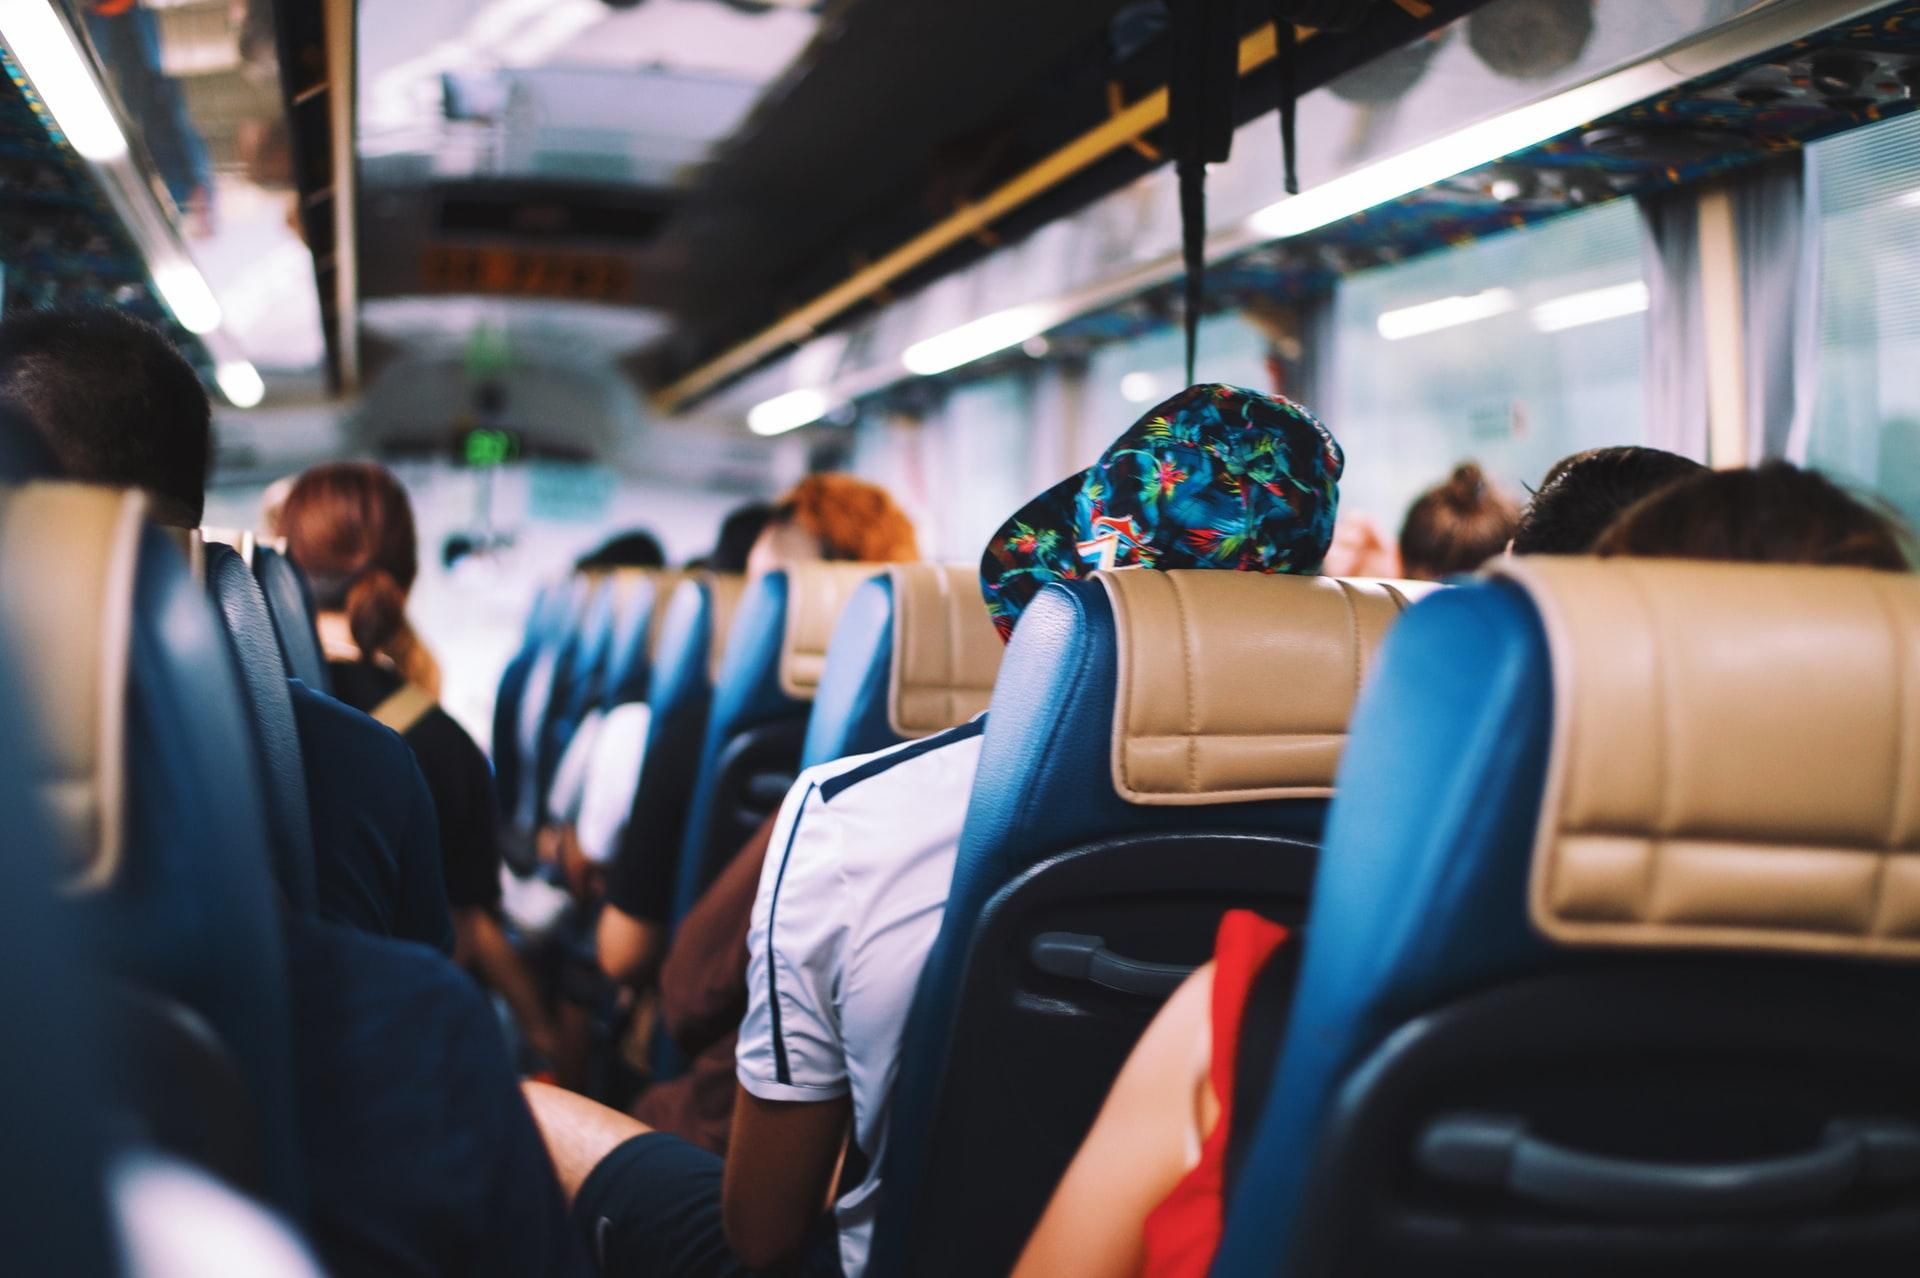 В автобусе один больной коронавирусом человек заразил десятки других пассажиров